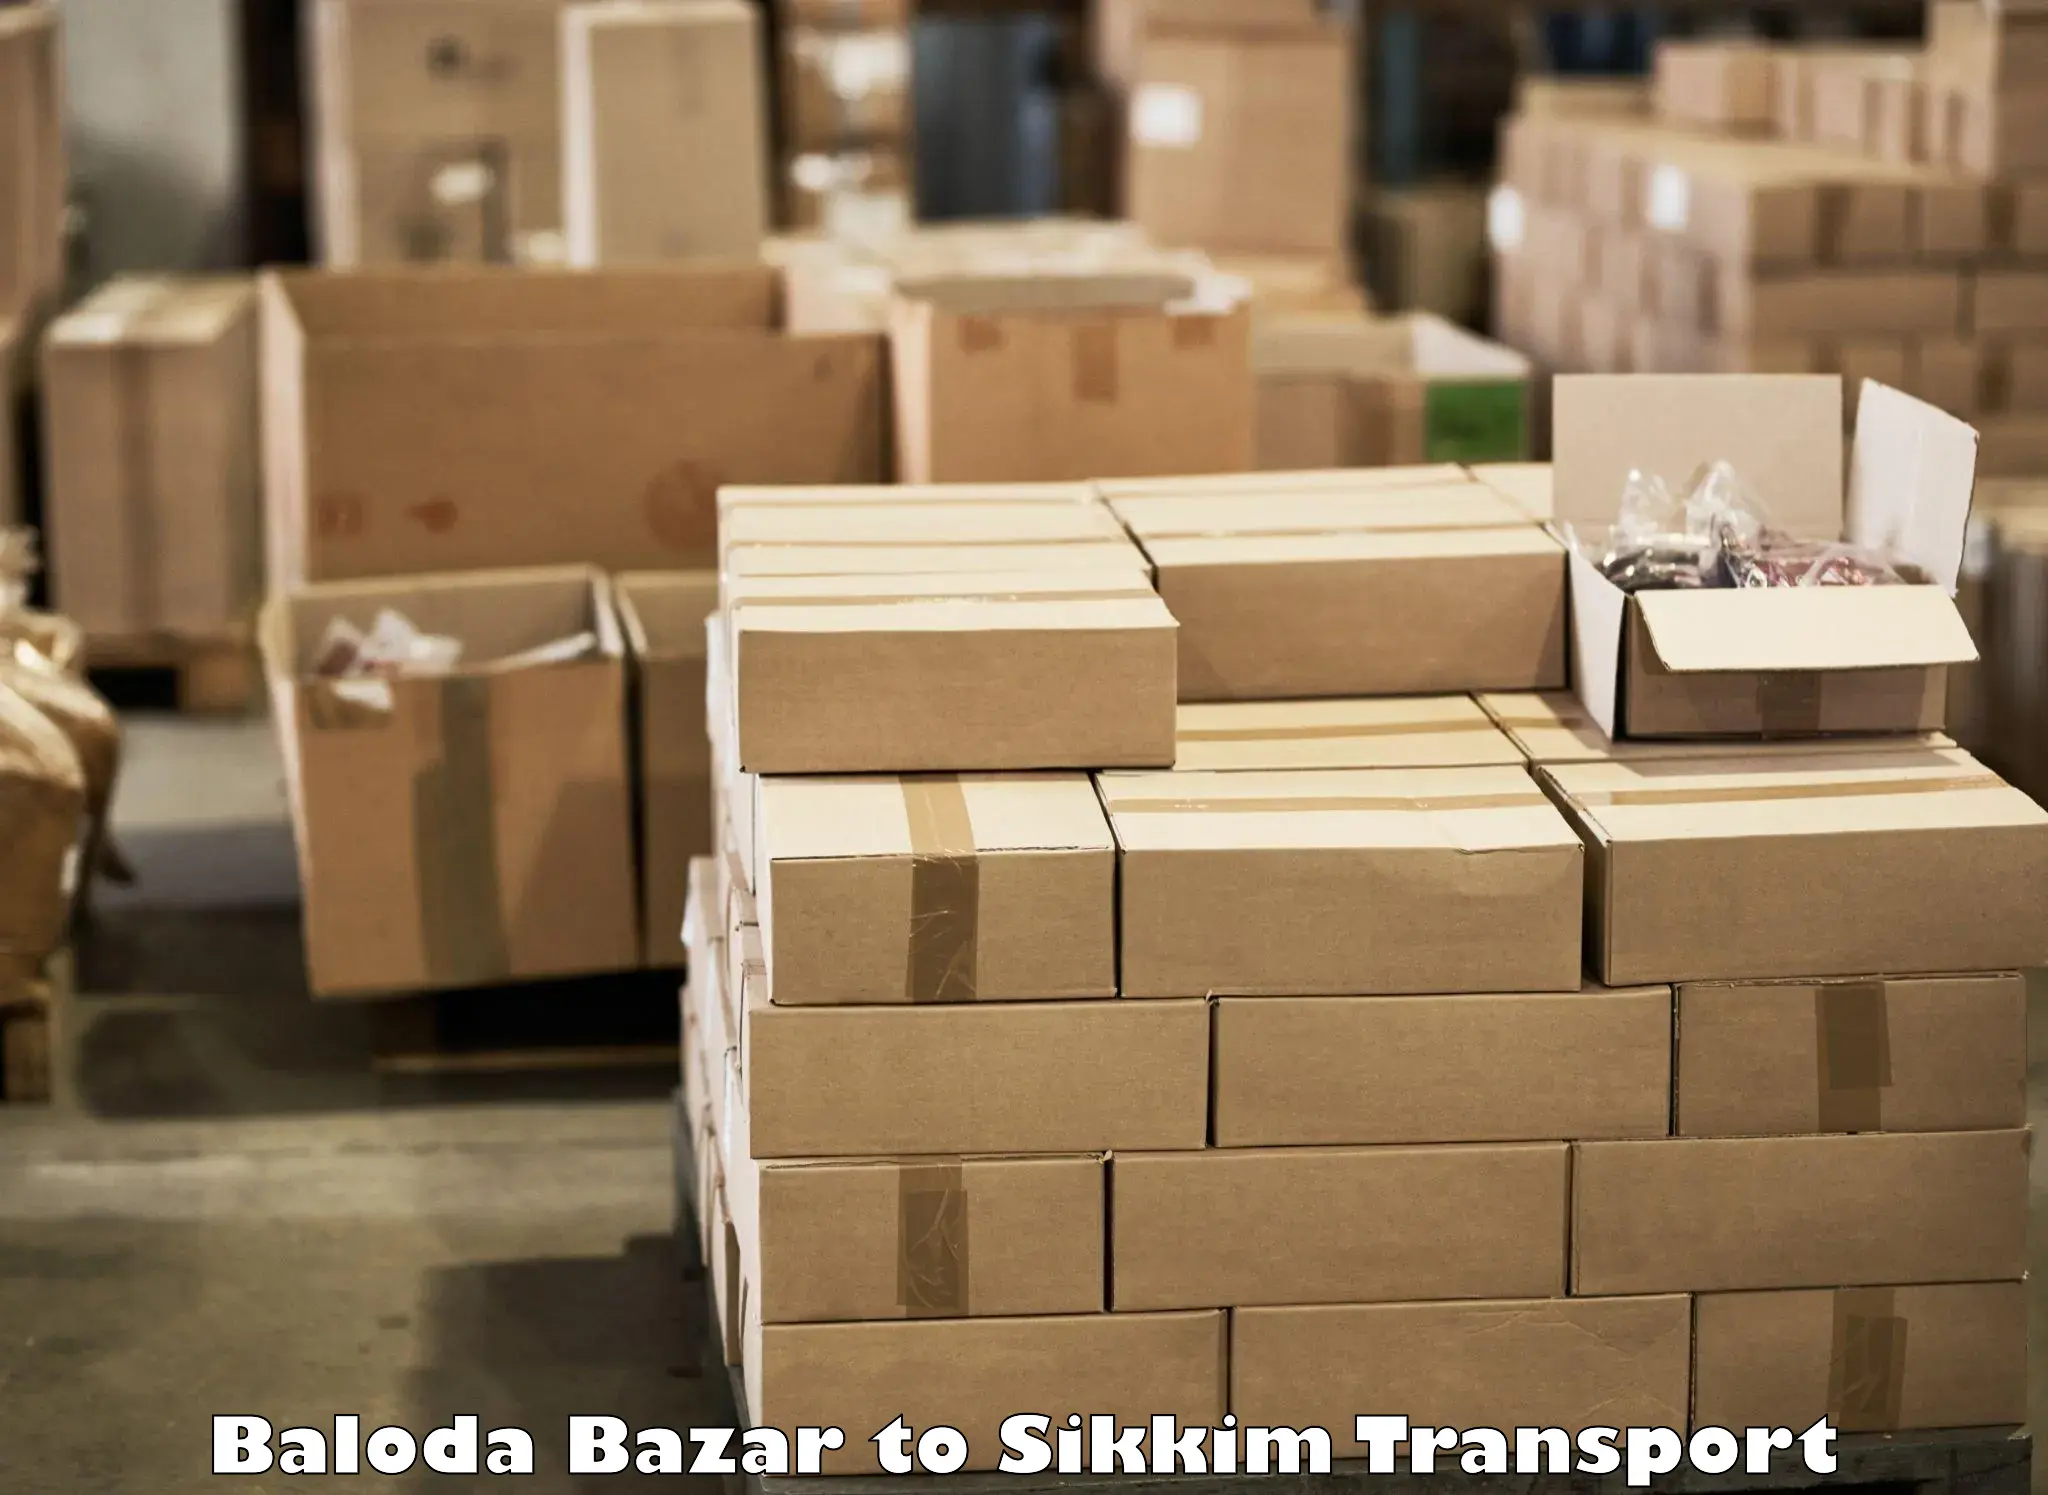 Nearest transport service Baloda Bazar to West Sikkim